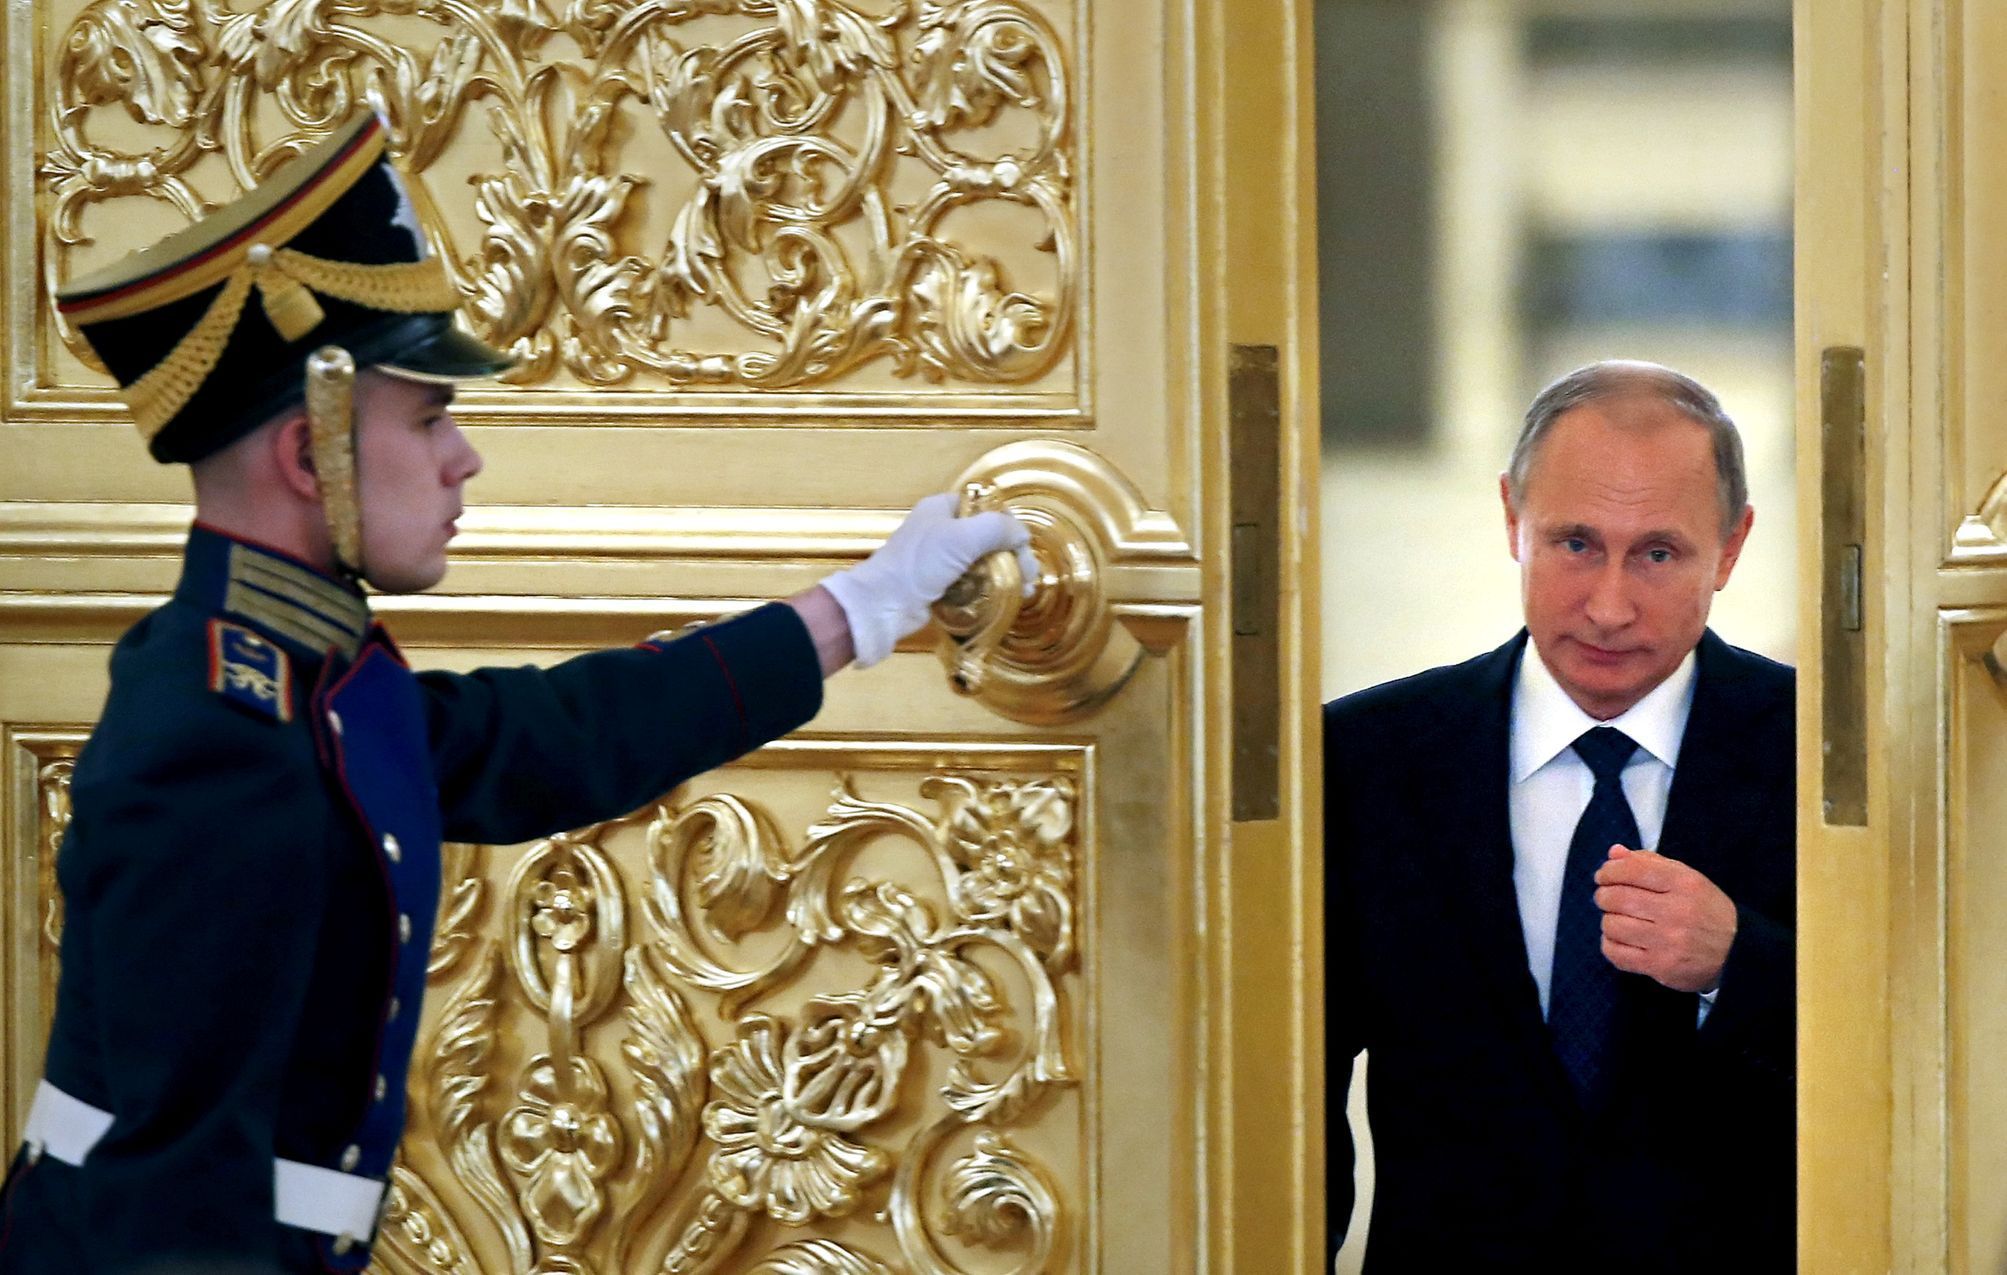 Vladimir Putin v Kremlu.